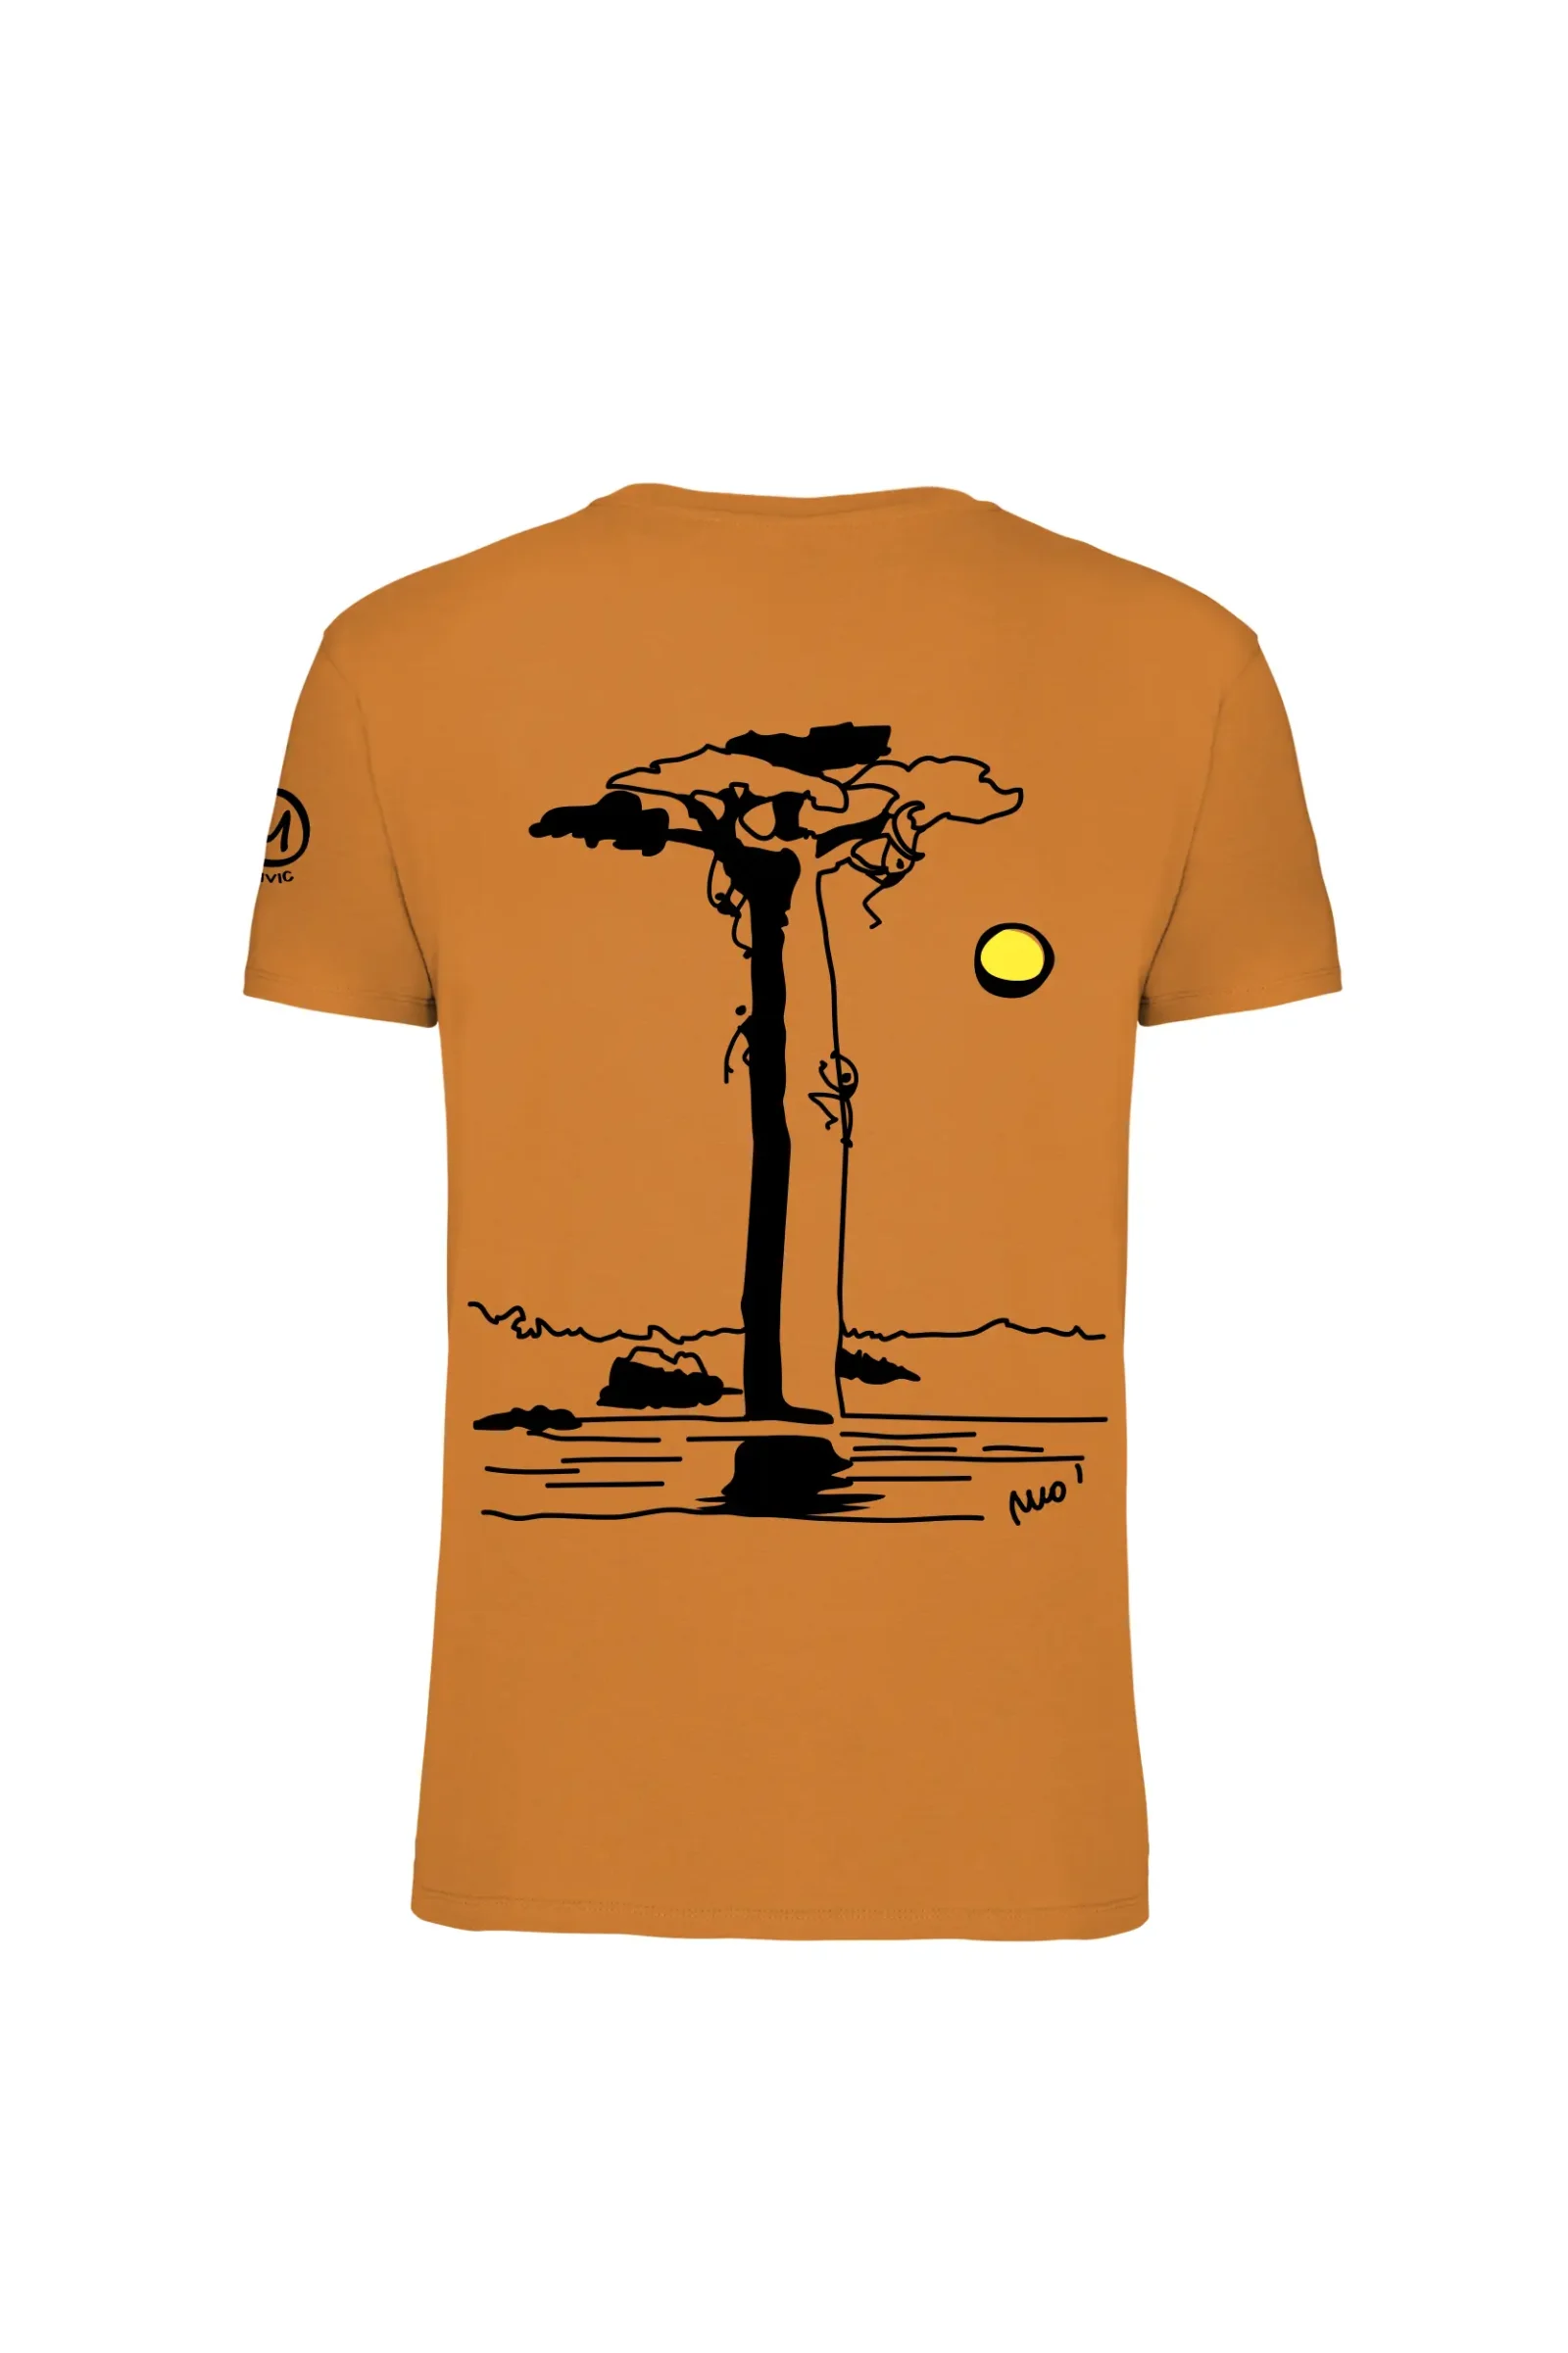 Men's climbing t-shirt - orange organic cotton - "Baobab" - HASH ORGANIC MONVIC